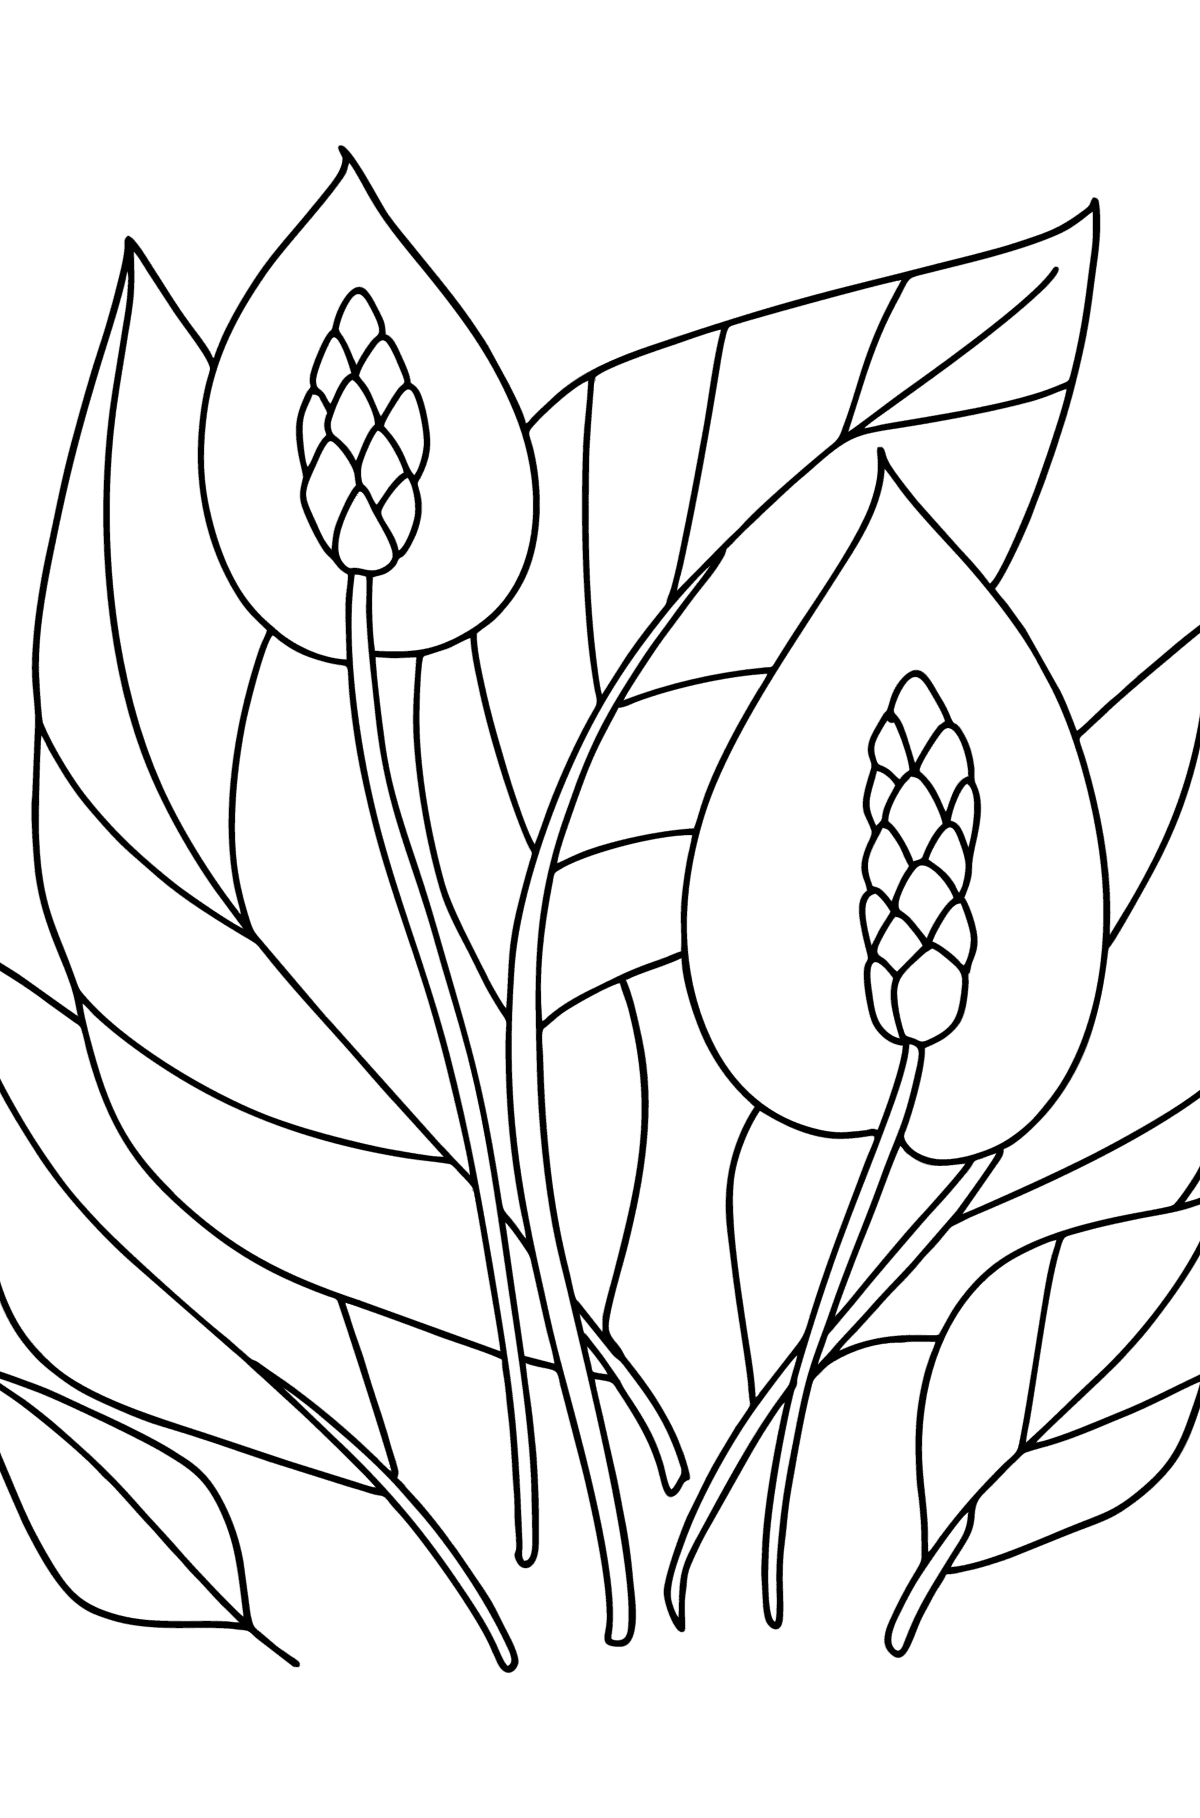 Kleurplaat Spathiphyllum - kleurplaten voor kinderen